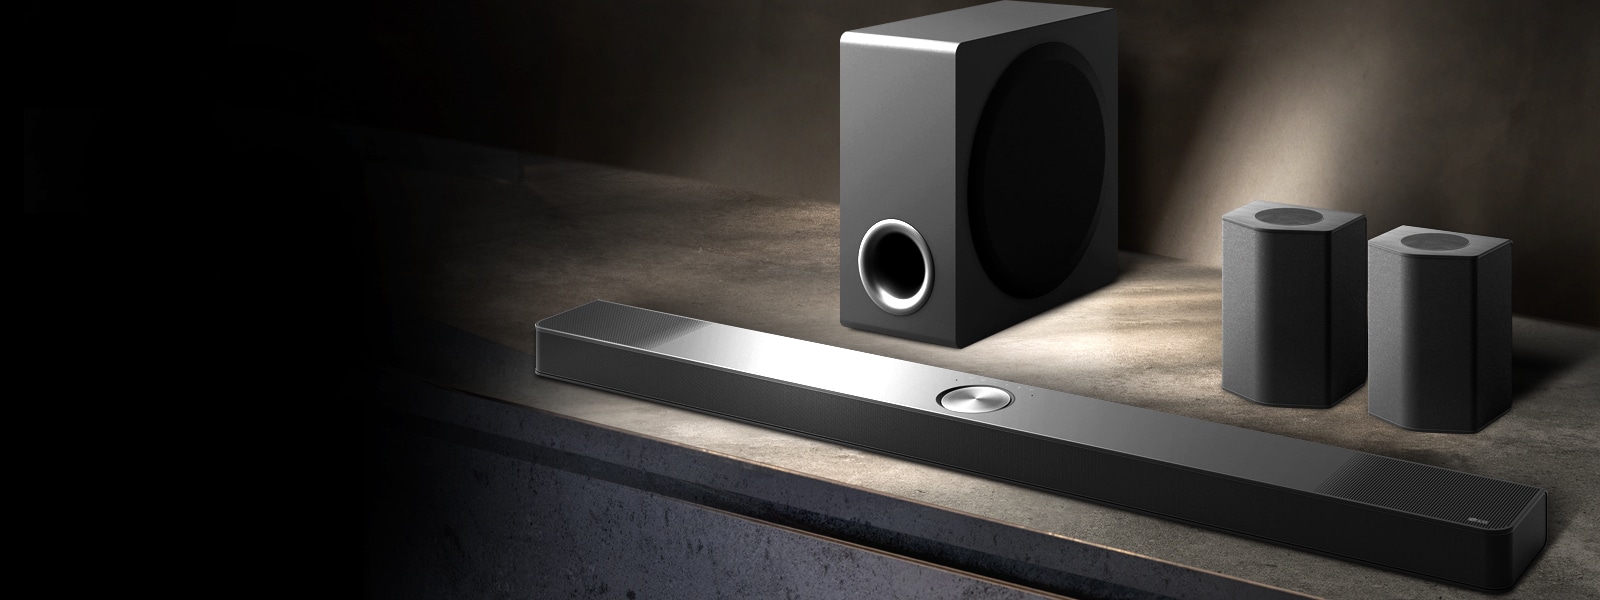 LG Soundbar, enceintes arrière et caisson de basse installés en biais sur une étagère en bois marron dans une pièce sombre, avec une lumière qui n’éclaire que le système audio.